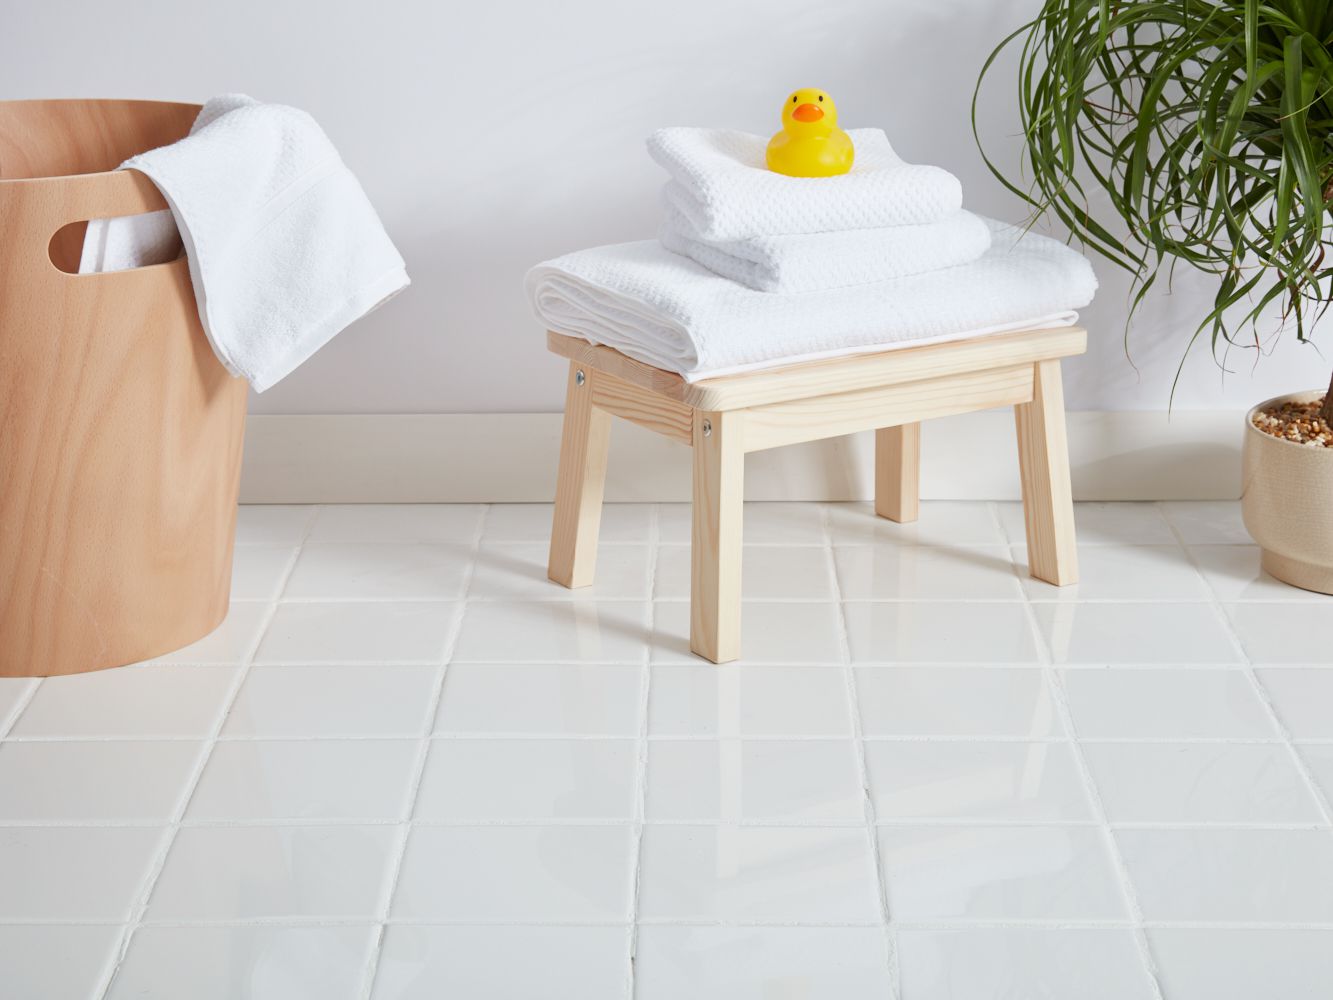 Ceramic Flooring Advantages